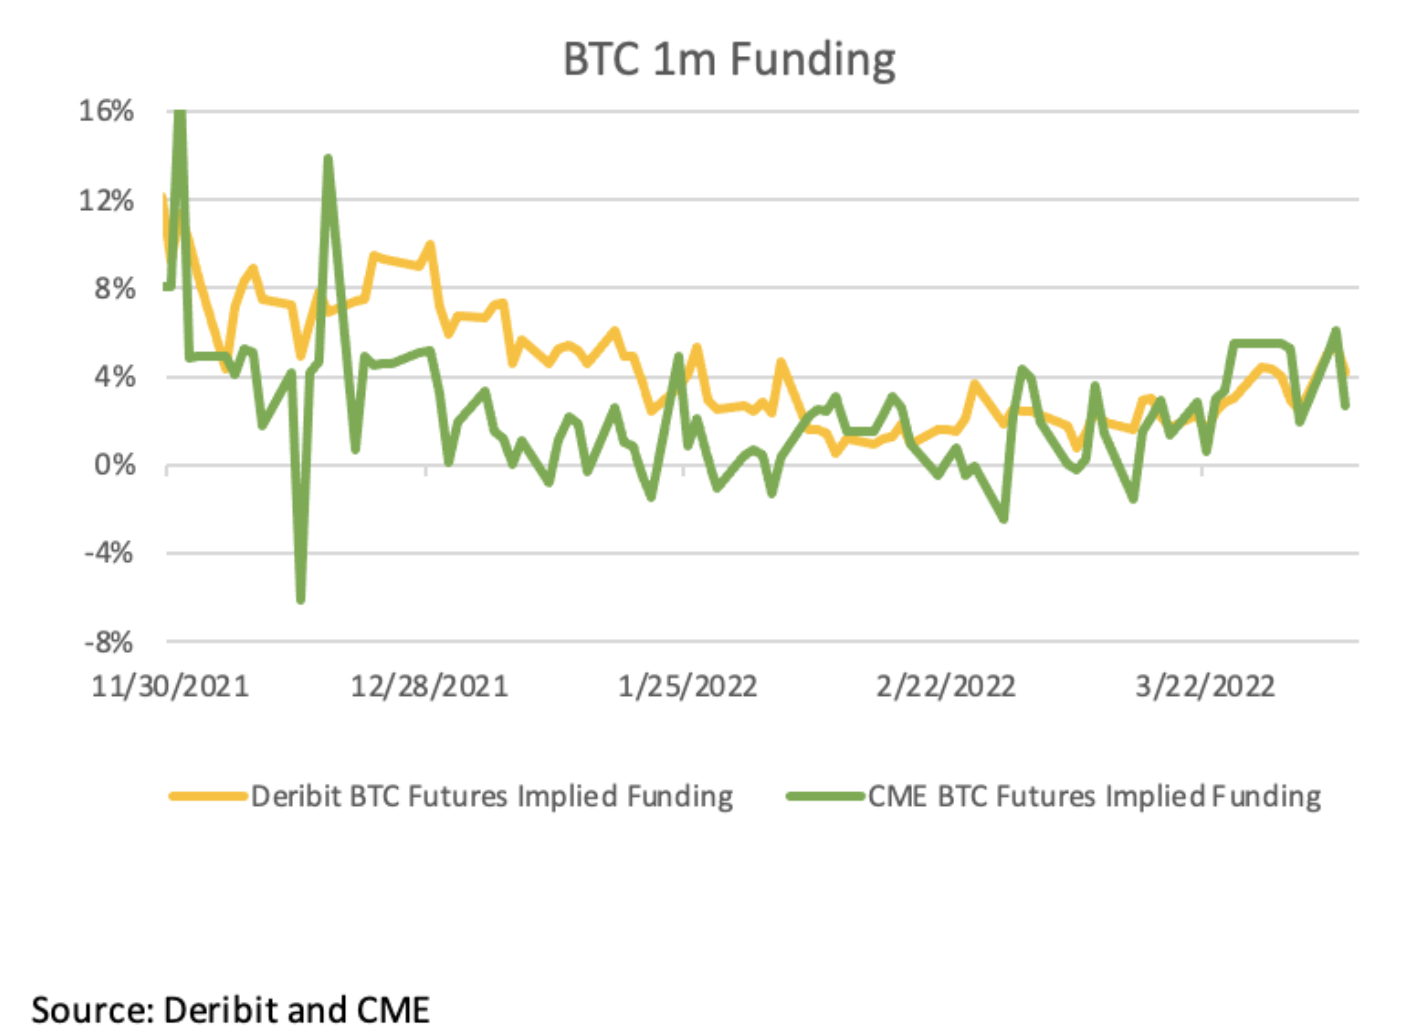 Deribit and CME BTC Futures